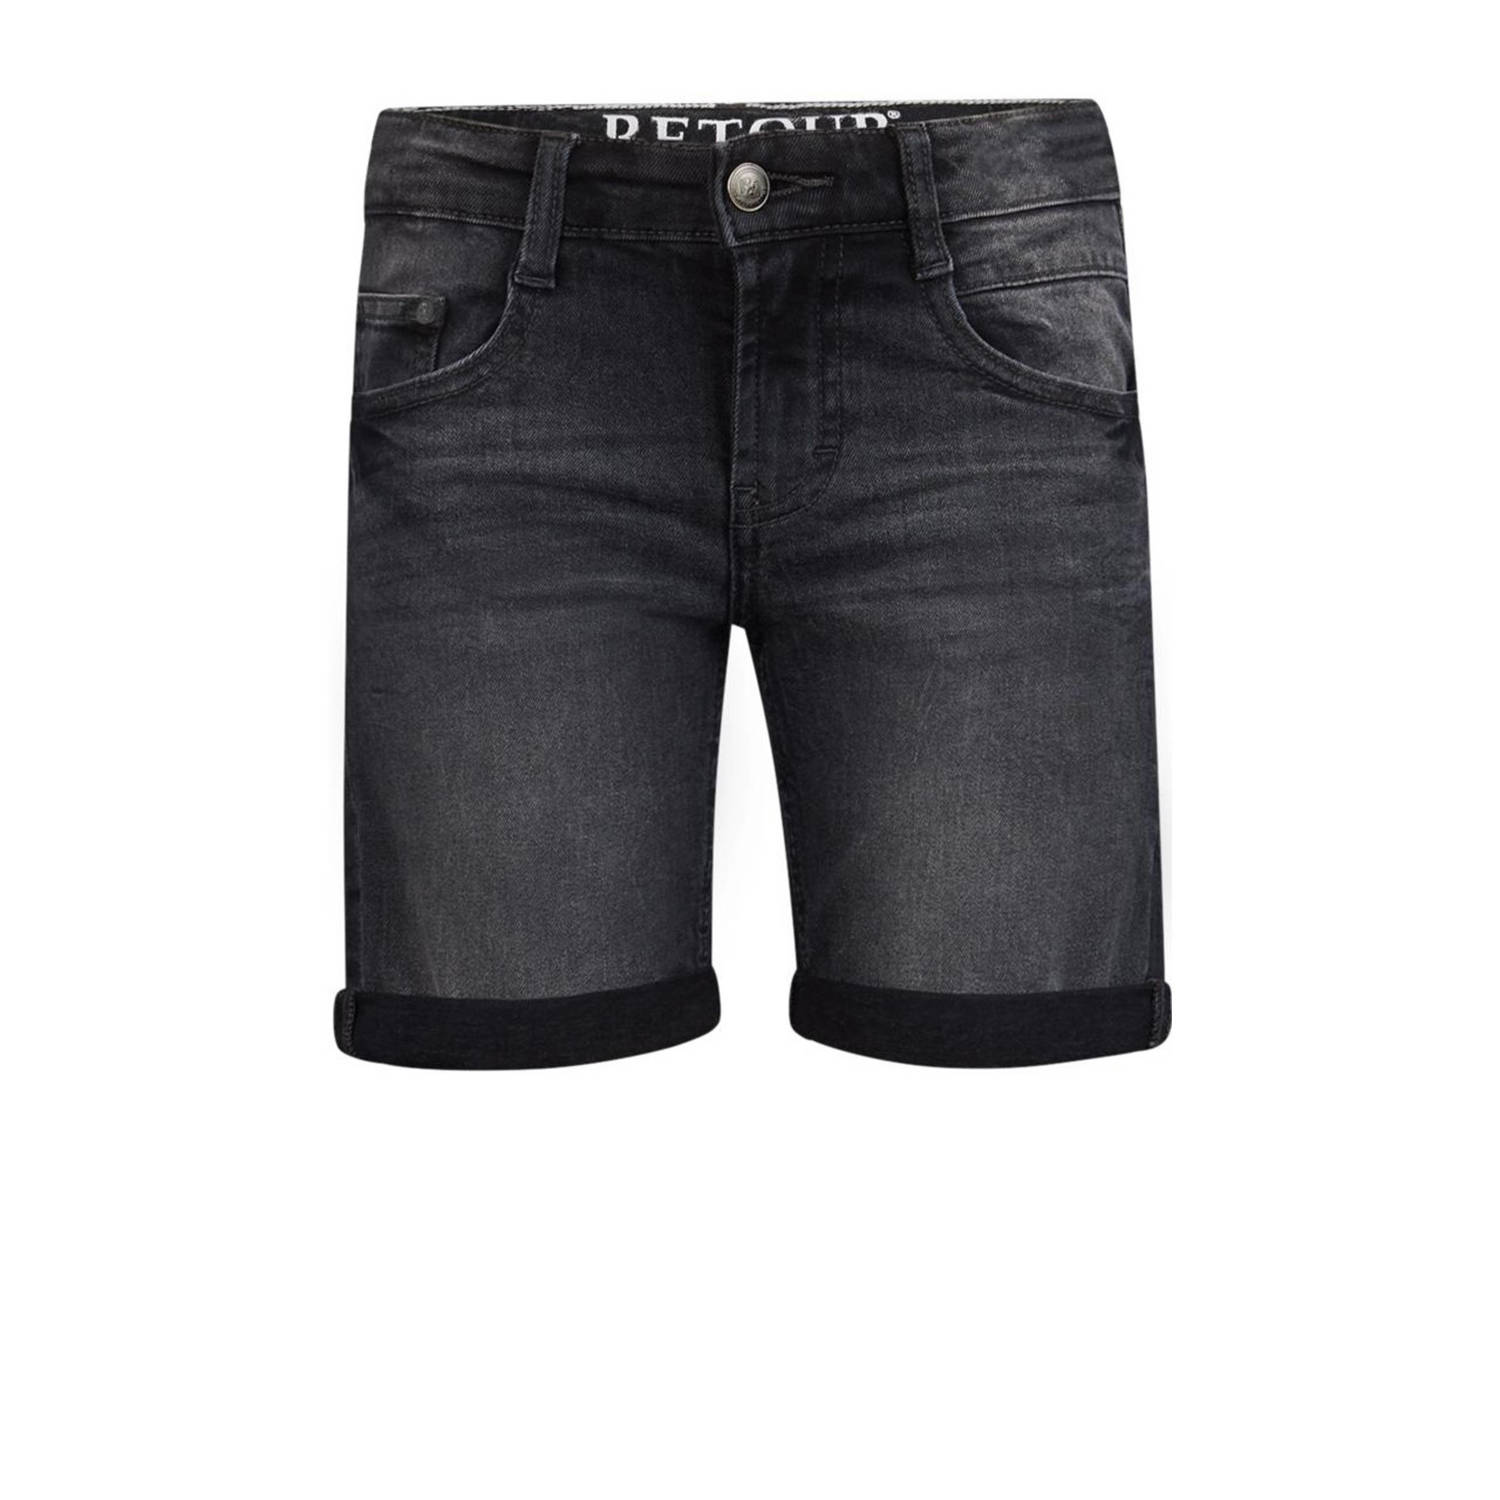 Retour Jeans denim short Reven industrial grey Korte broek Zwart Jongens Stretchdenim 116